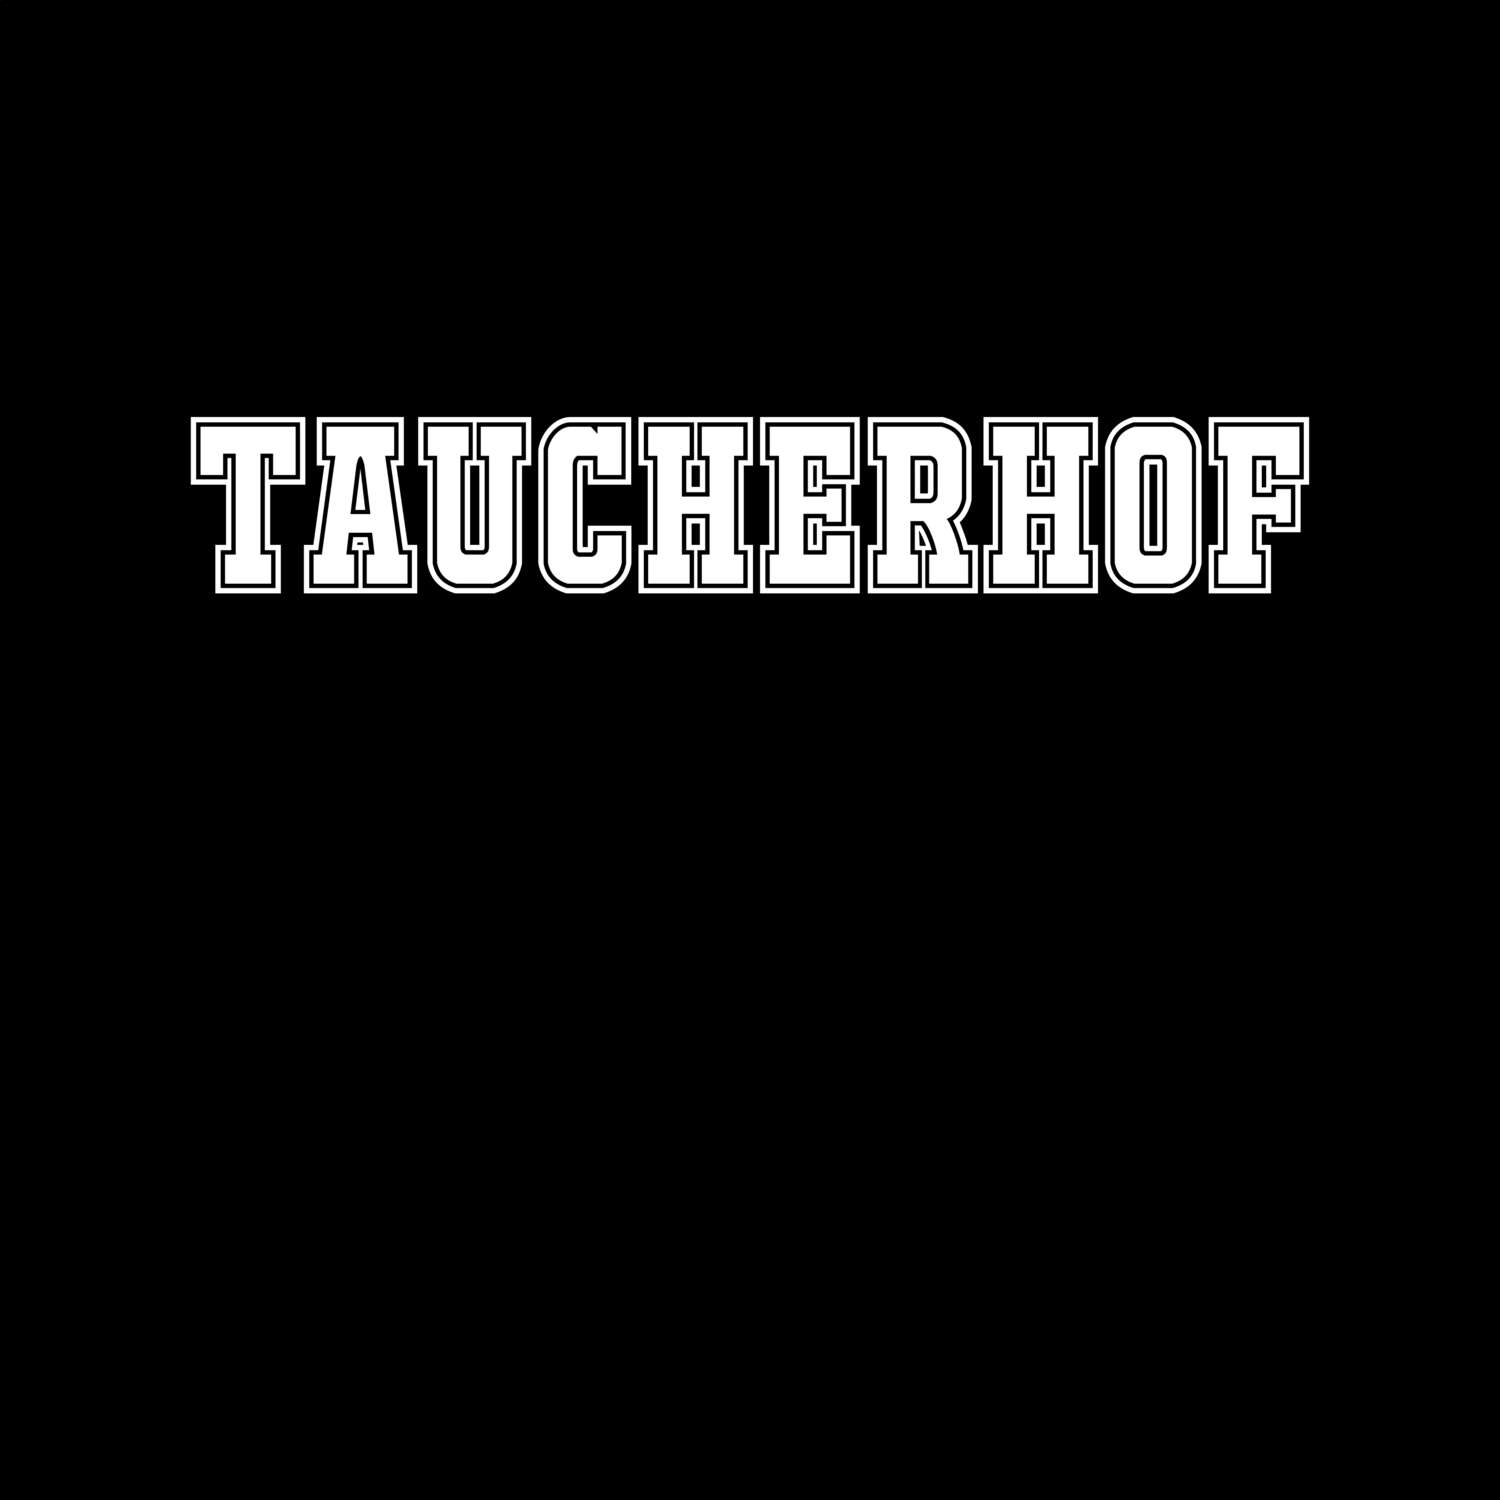 Taucherhof T-Shirt »Classic«